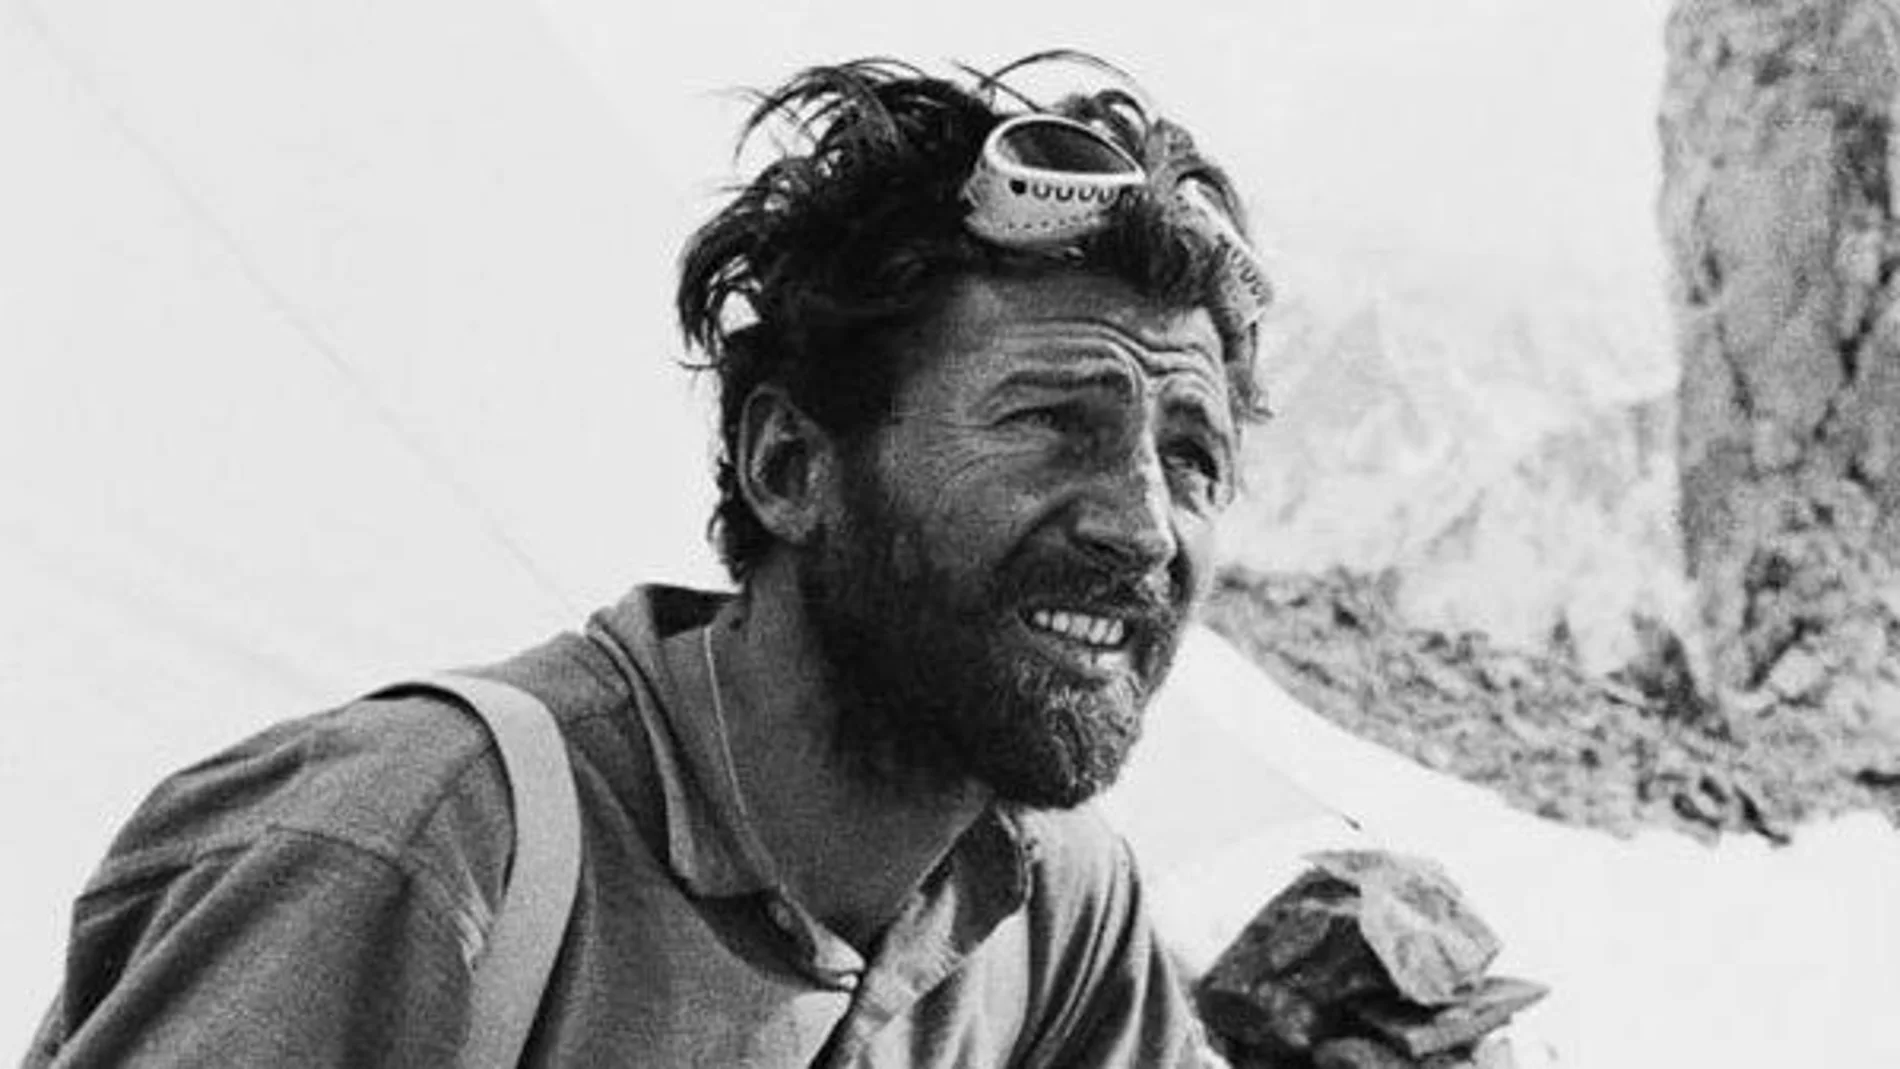 El alpinista austriaco Hermann Buhl, que realizó la primera ascensión al Nanga Parbat en 1953